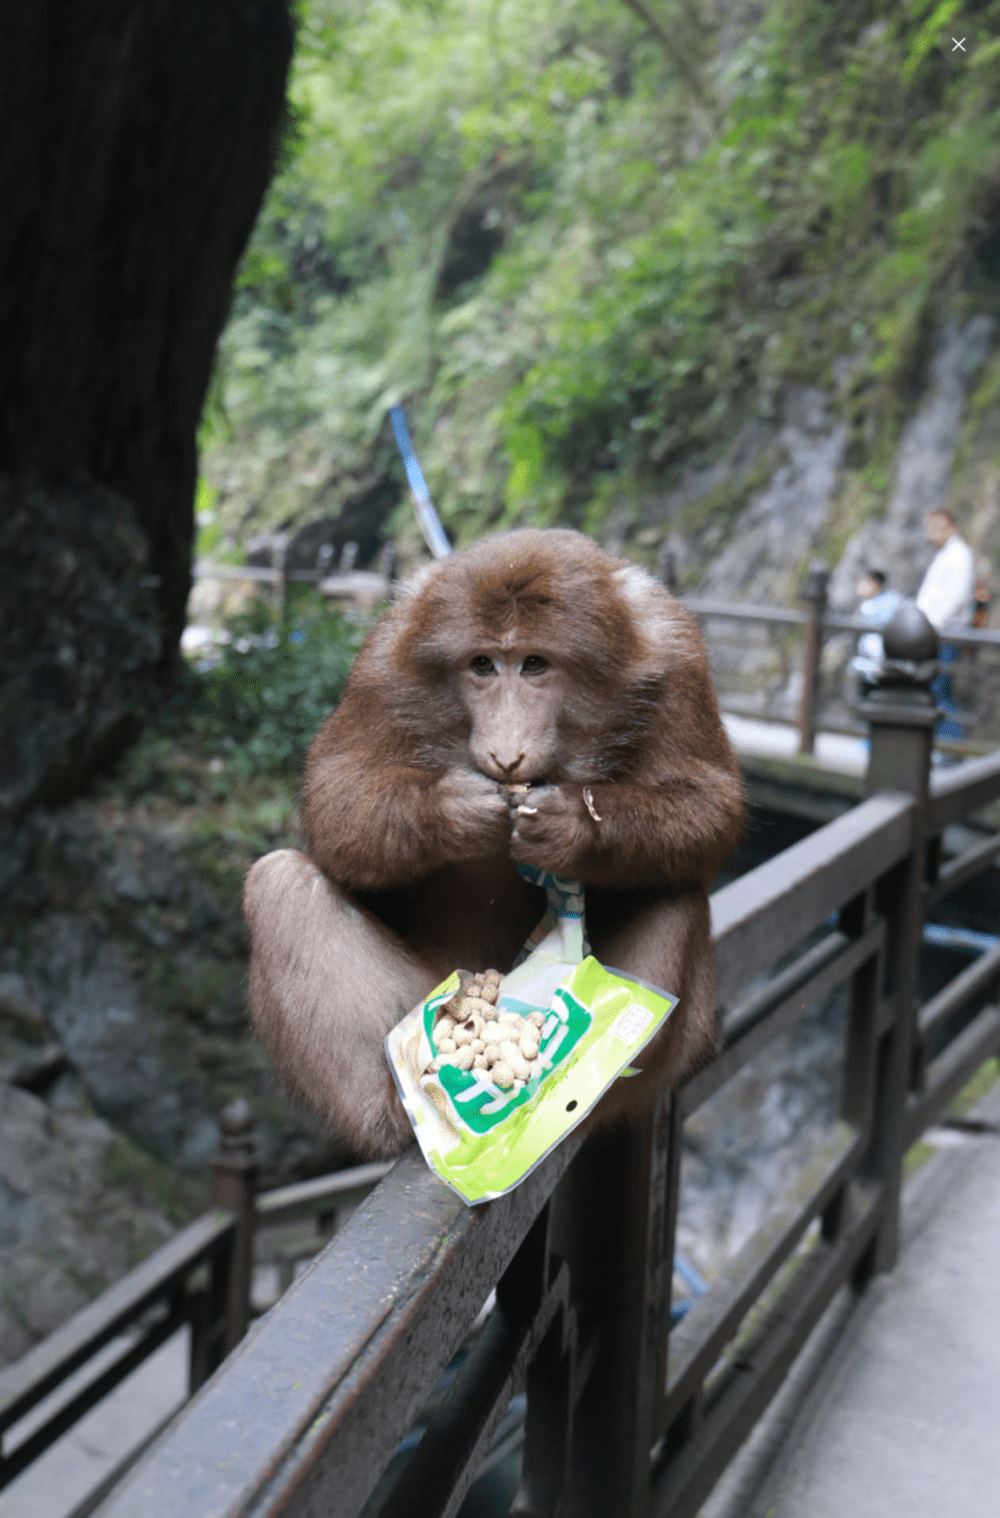 领头猴子抢过一袋花生，自助开了包装。<br>